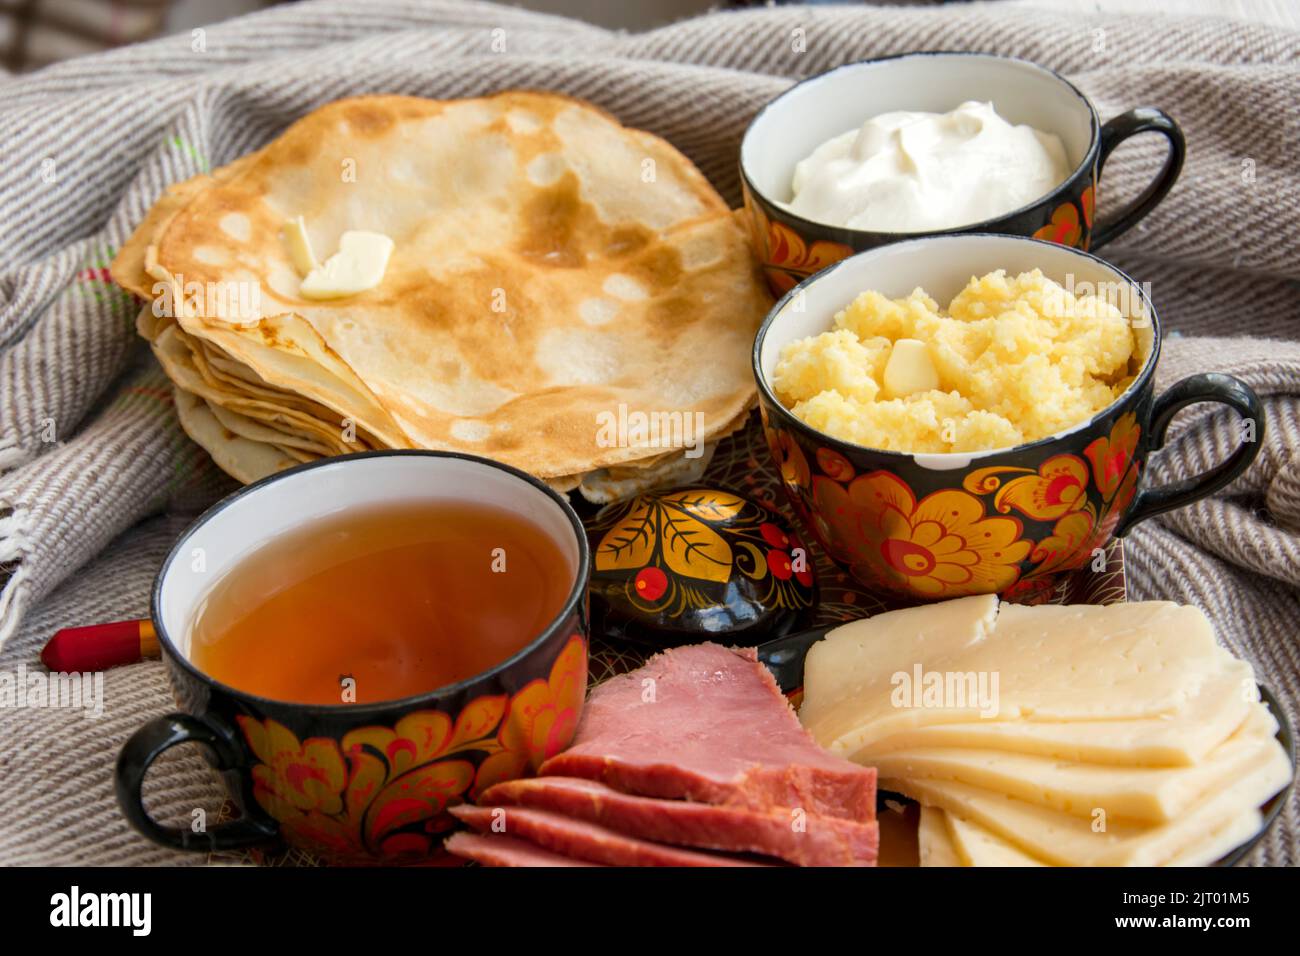 Colazione a letto per i tuoi cari, frittelle dolci con panna acida, formaggio e carne, corn porridge e una tazza di tè appena fatto. Buongiorno! Foto Stock